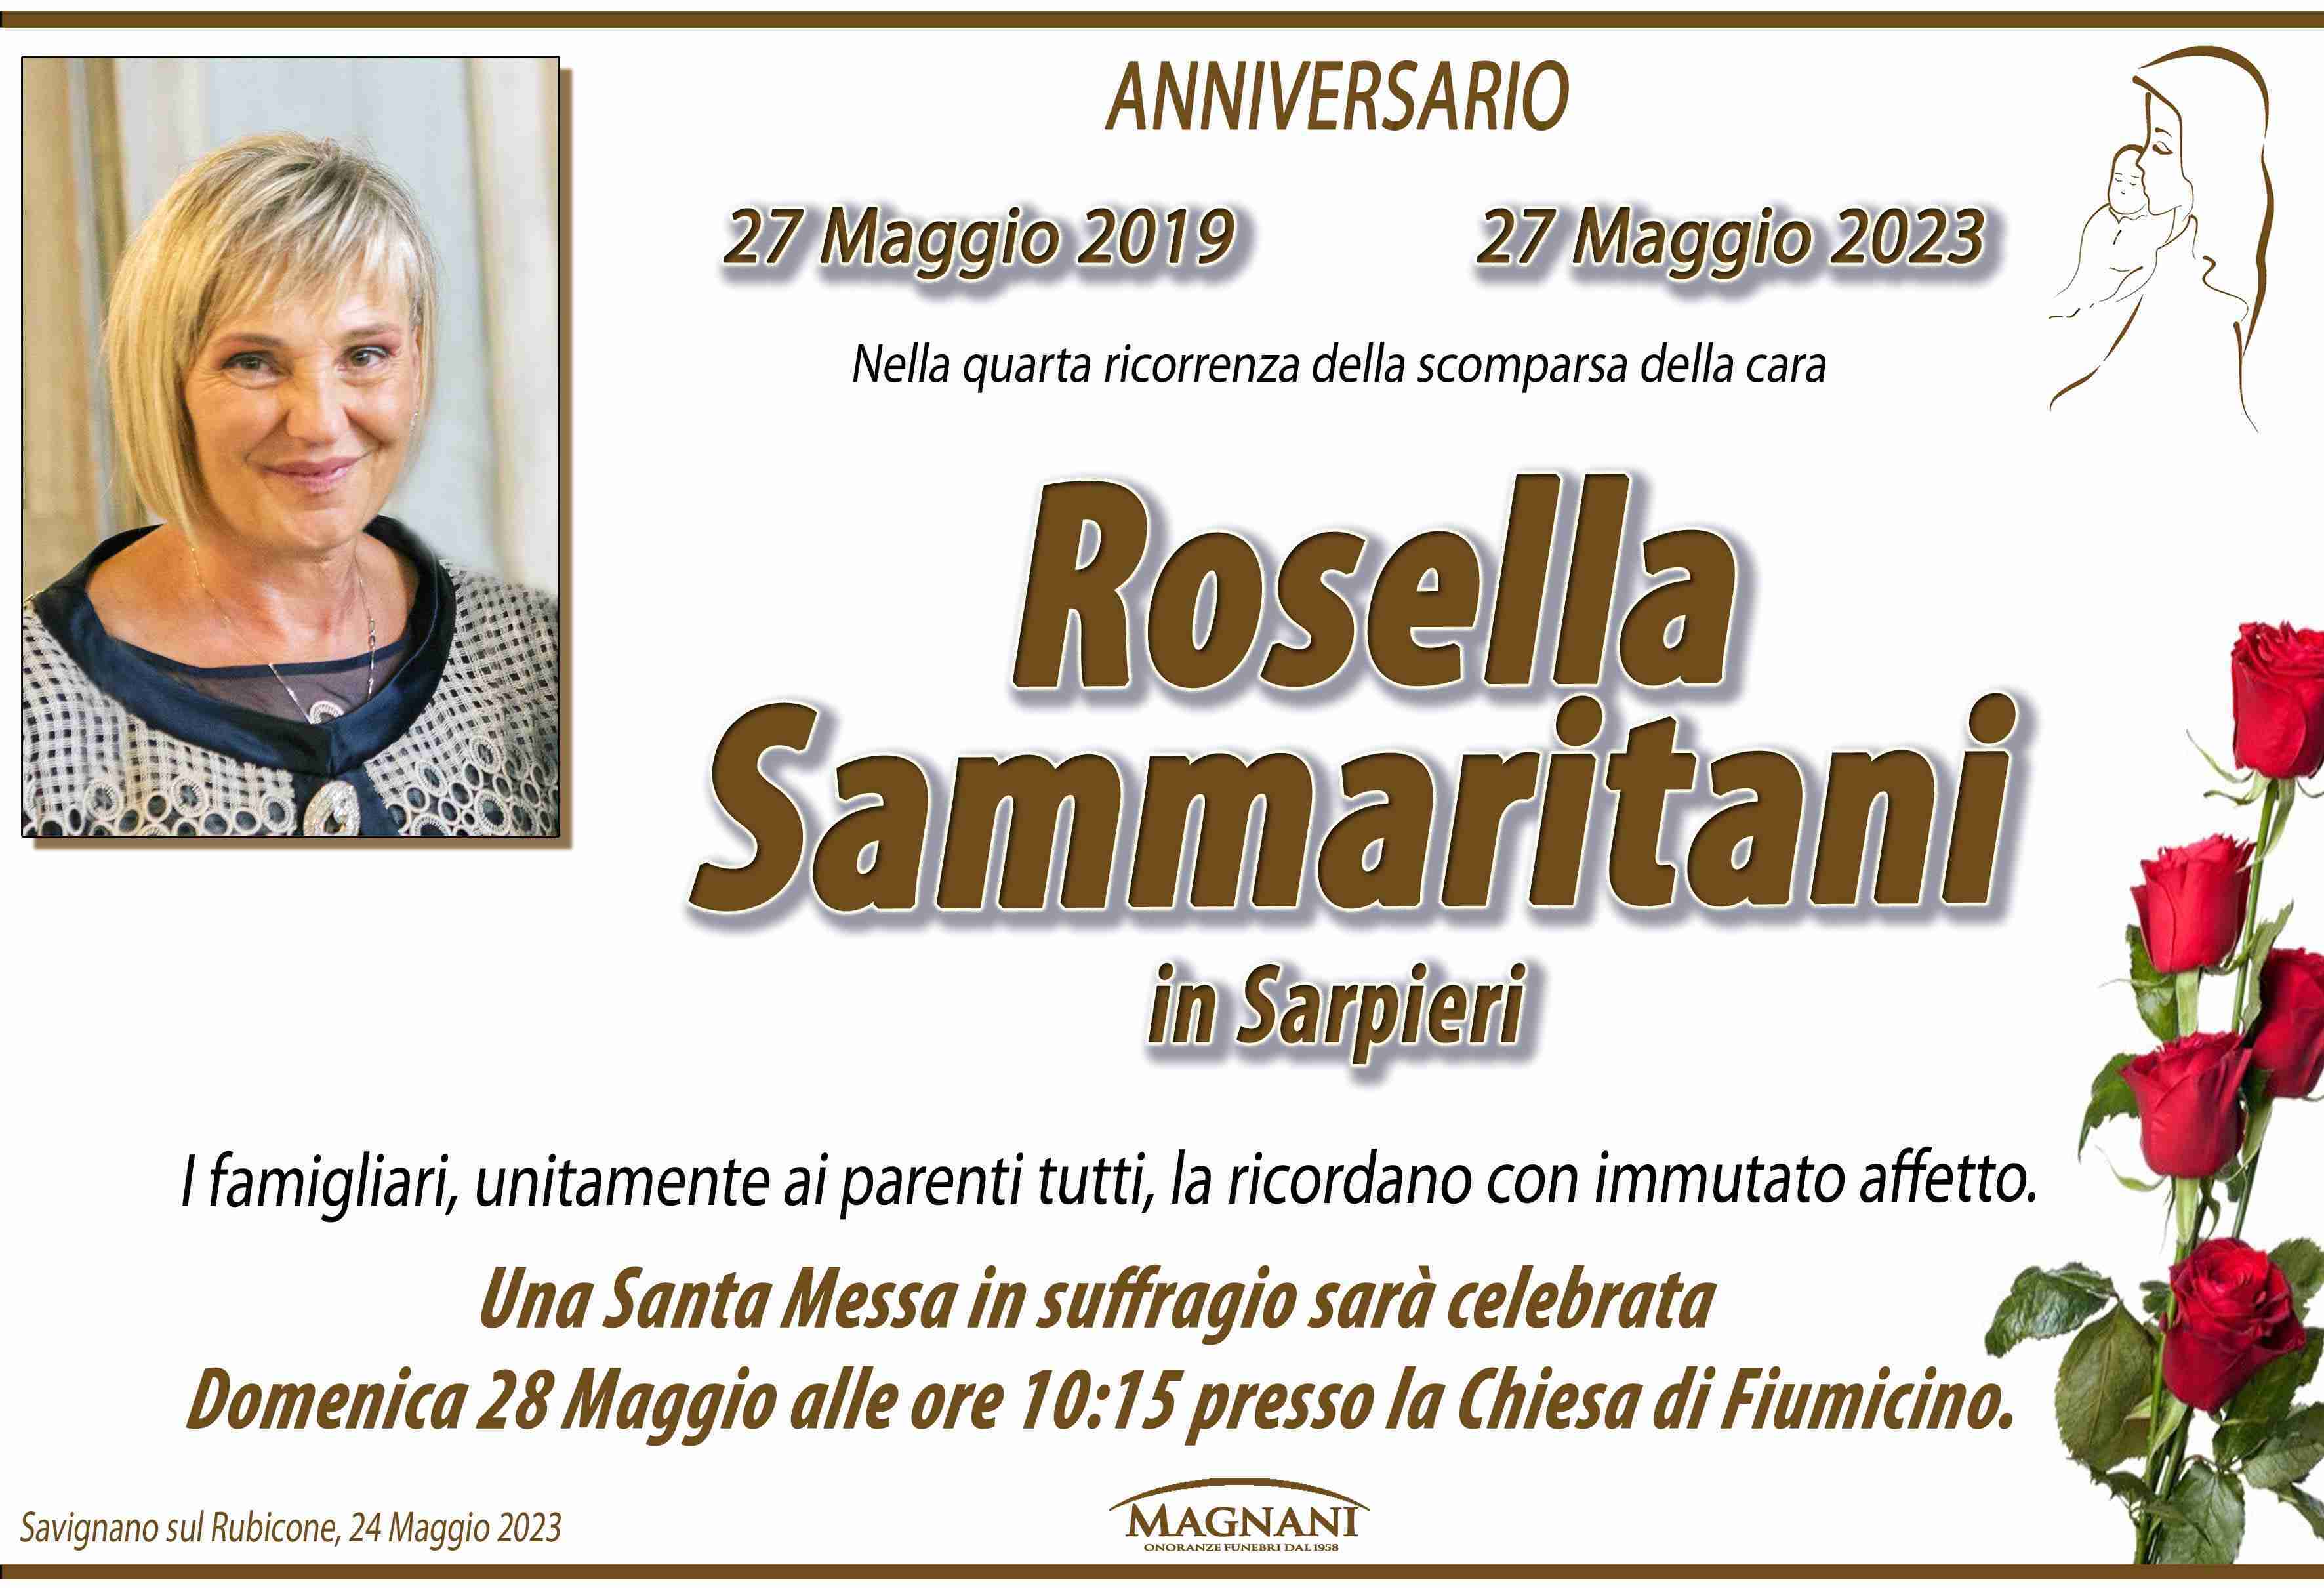 Sammaritani Rosella in Sarpieri